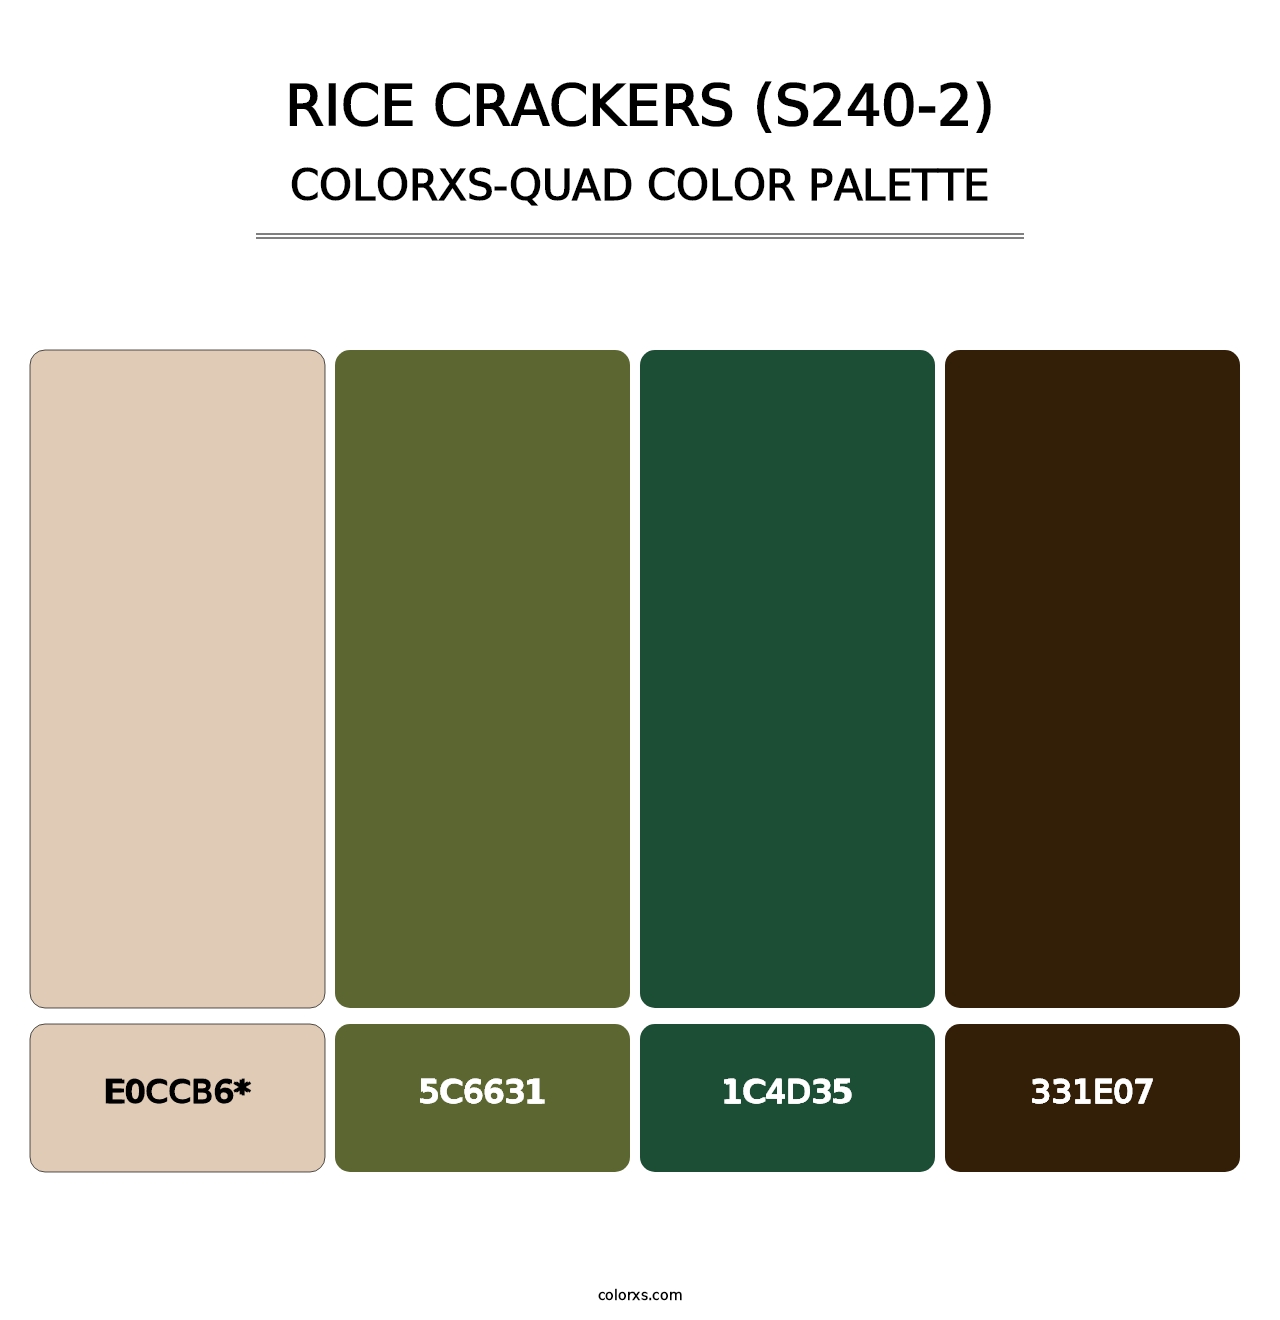 Rice Crackers (S240-2) - Colorxs Quad Palette